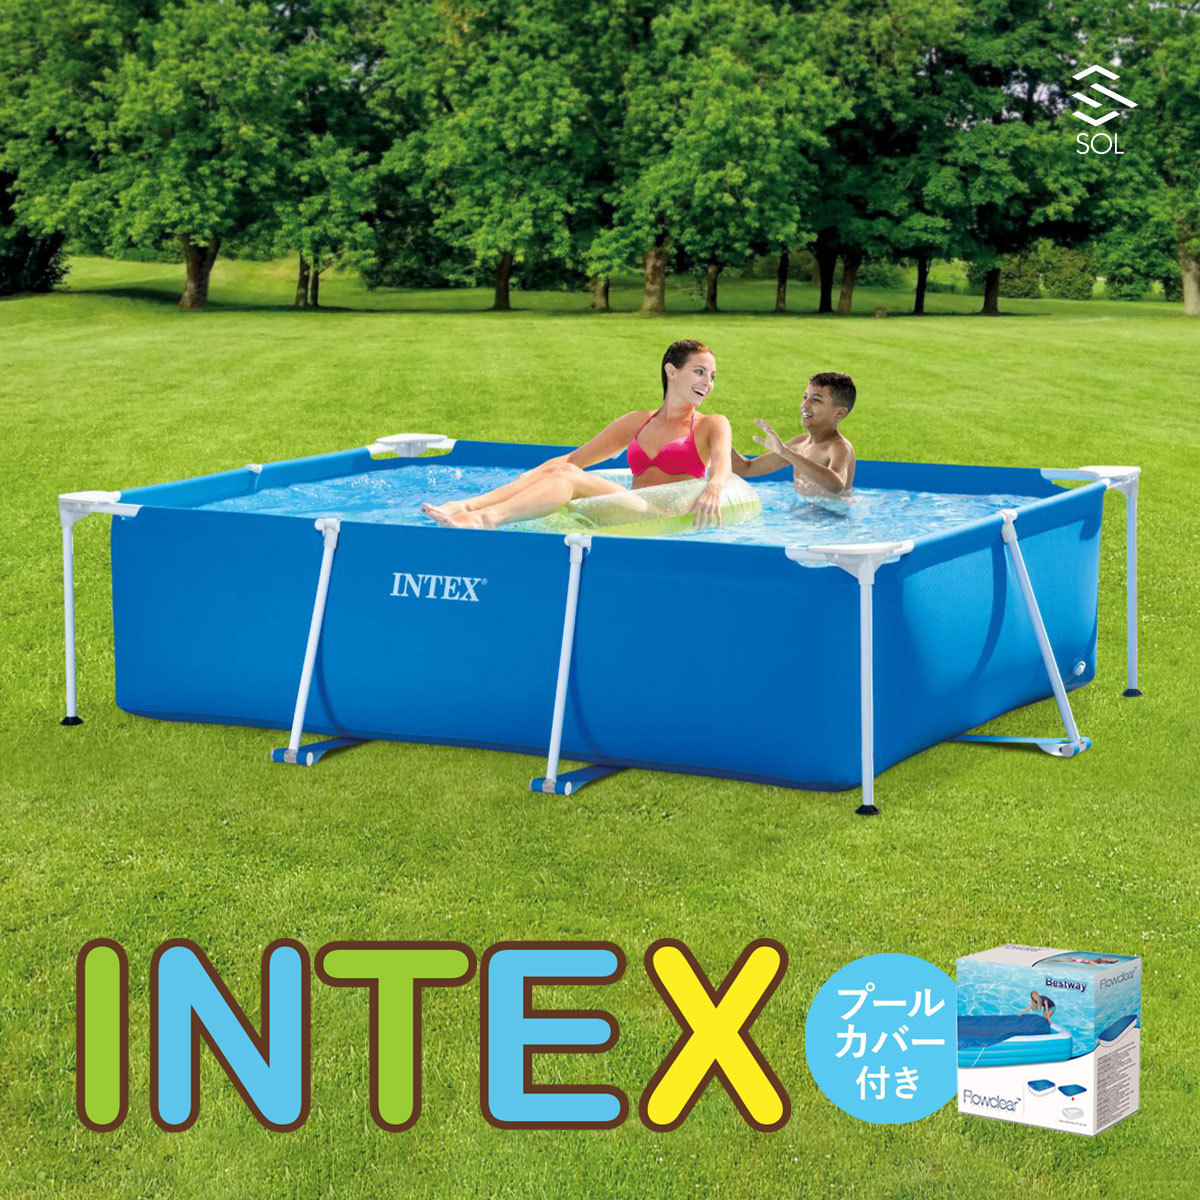 INTEX бассейн специальный с покрытием большой стандартный товар Inte k потертость k tang la рама домашний бассейн усиленный винил 3 слой структура 220cmX150cmX60cm 28270